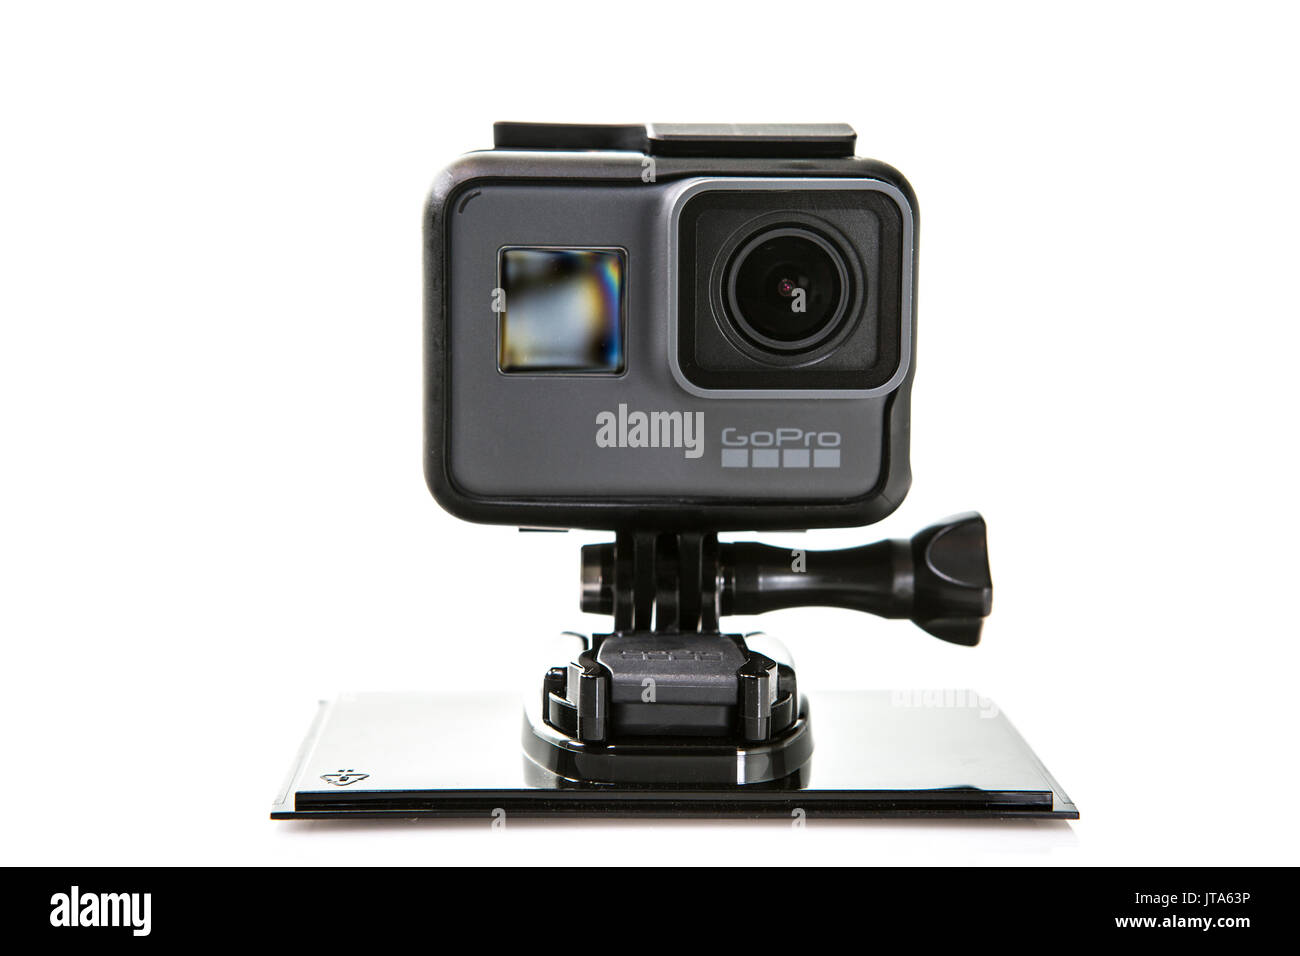 SWINDON, Großbritannien - 8 August, 2017: GoPro Hero 5 schwarze Action Kamera auf weißem Hintergrund Stockfoto